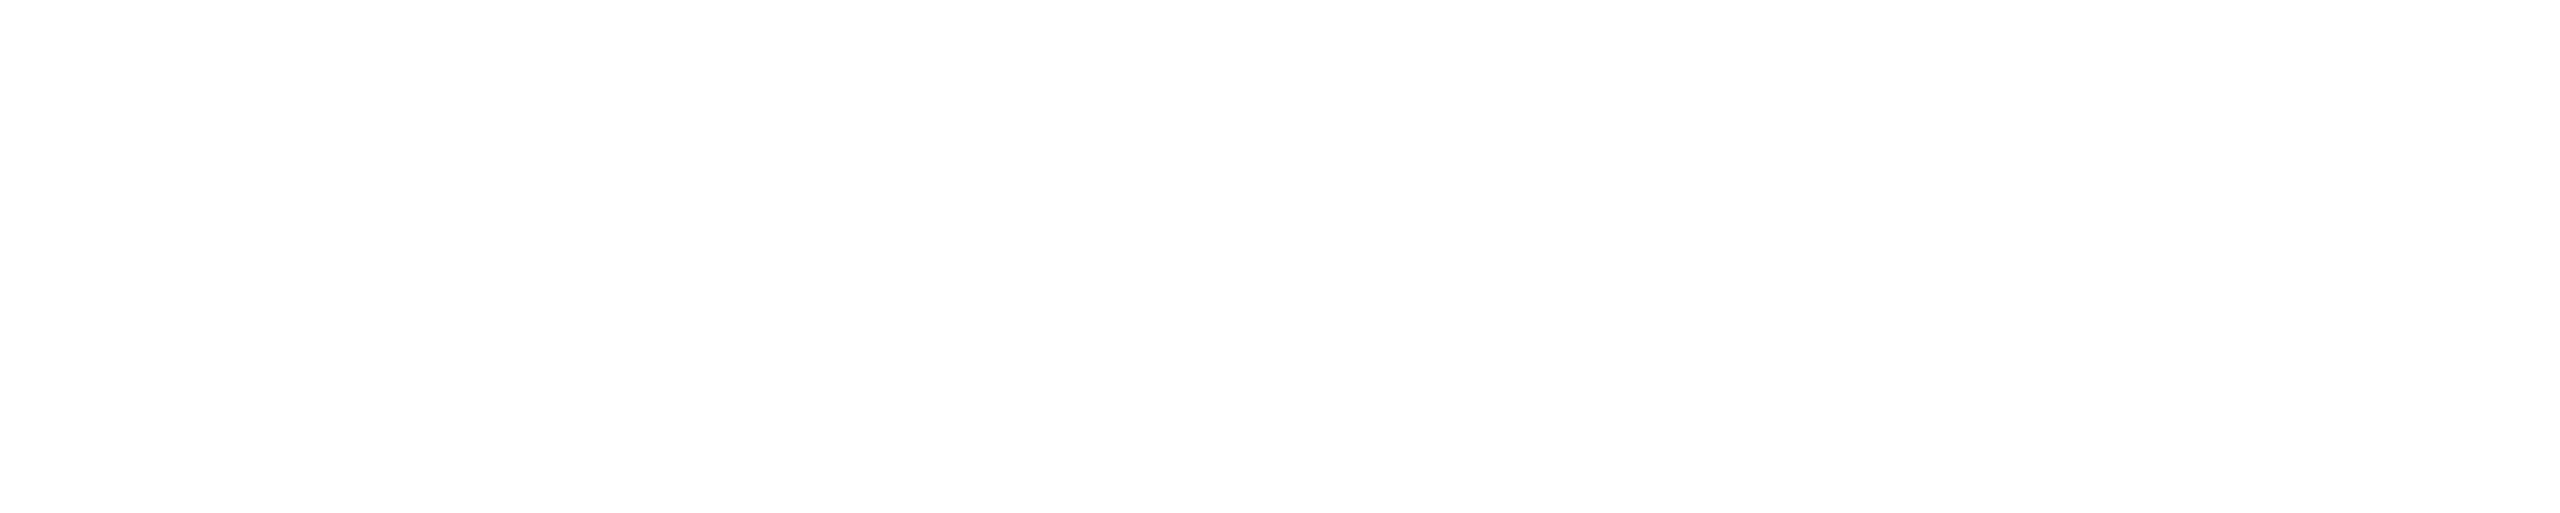 Sendcloud wit logo